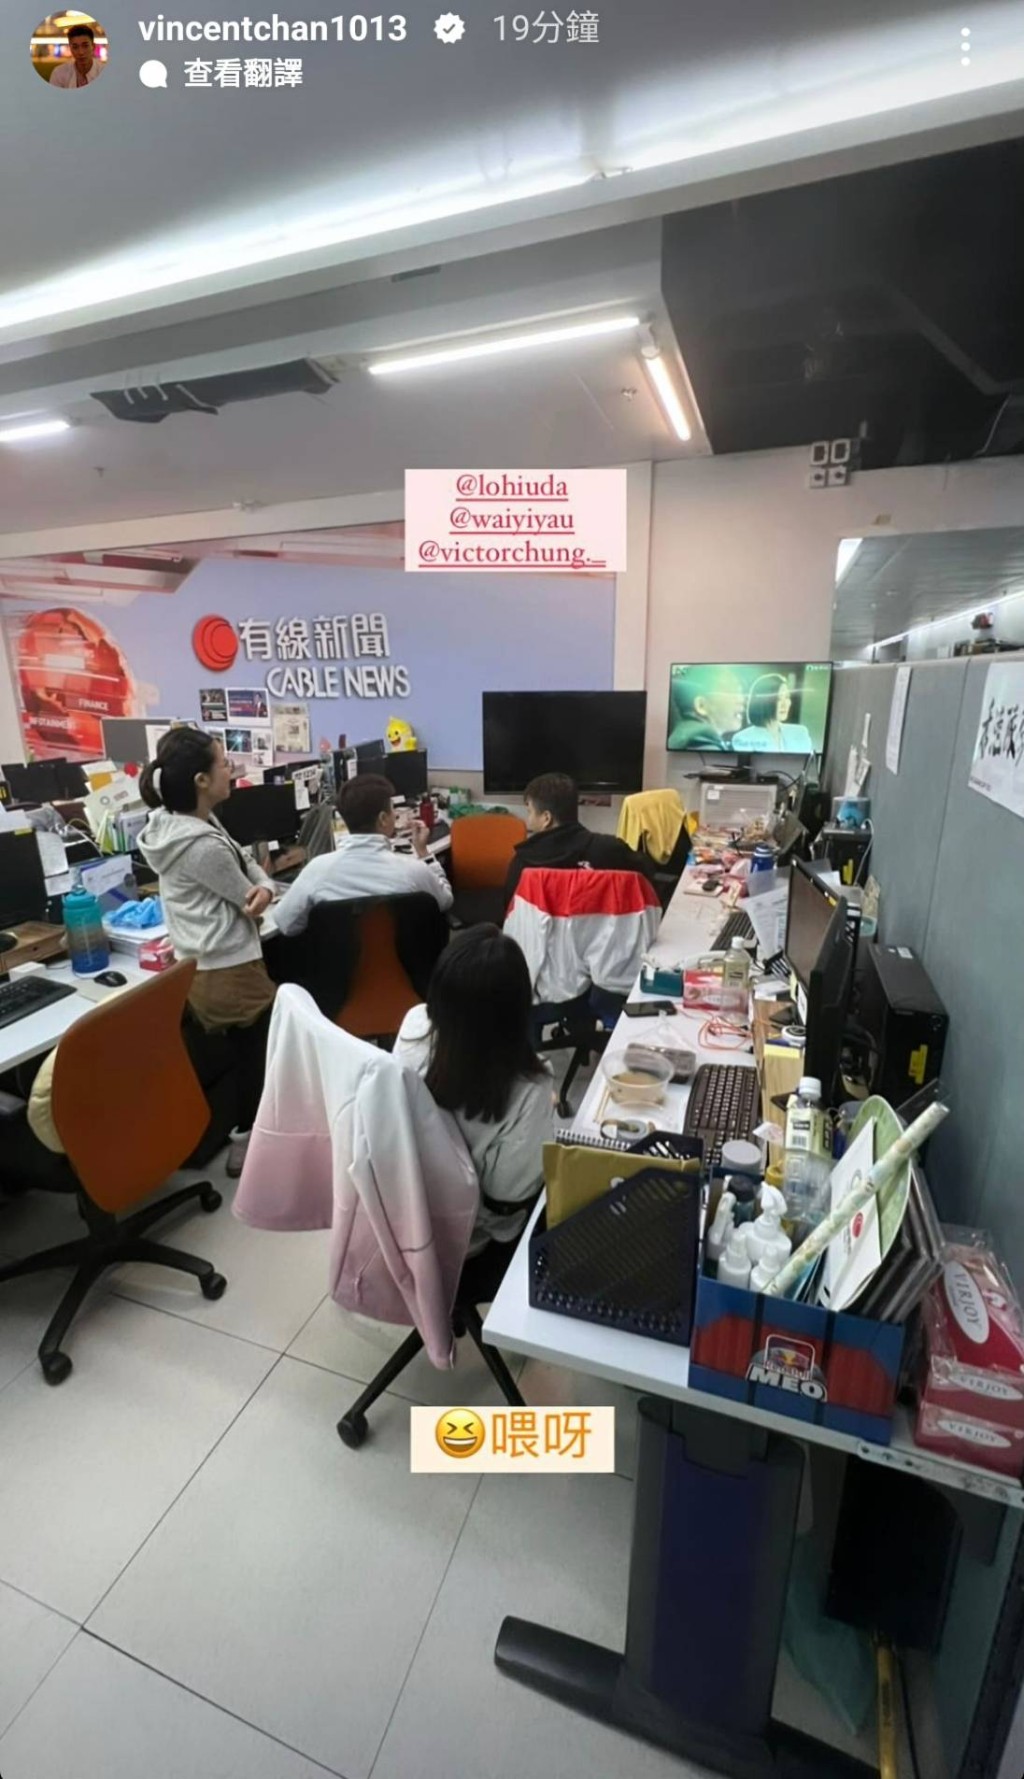 有線男主播陳書君昨晚在IG Story貼出與主播鍾卓恆、記者邱蔚怡及其他工作人員一同在辦公室用電視睇《新聞女王》的照片。